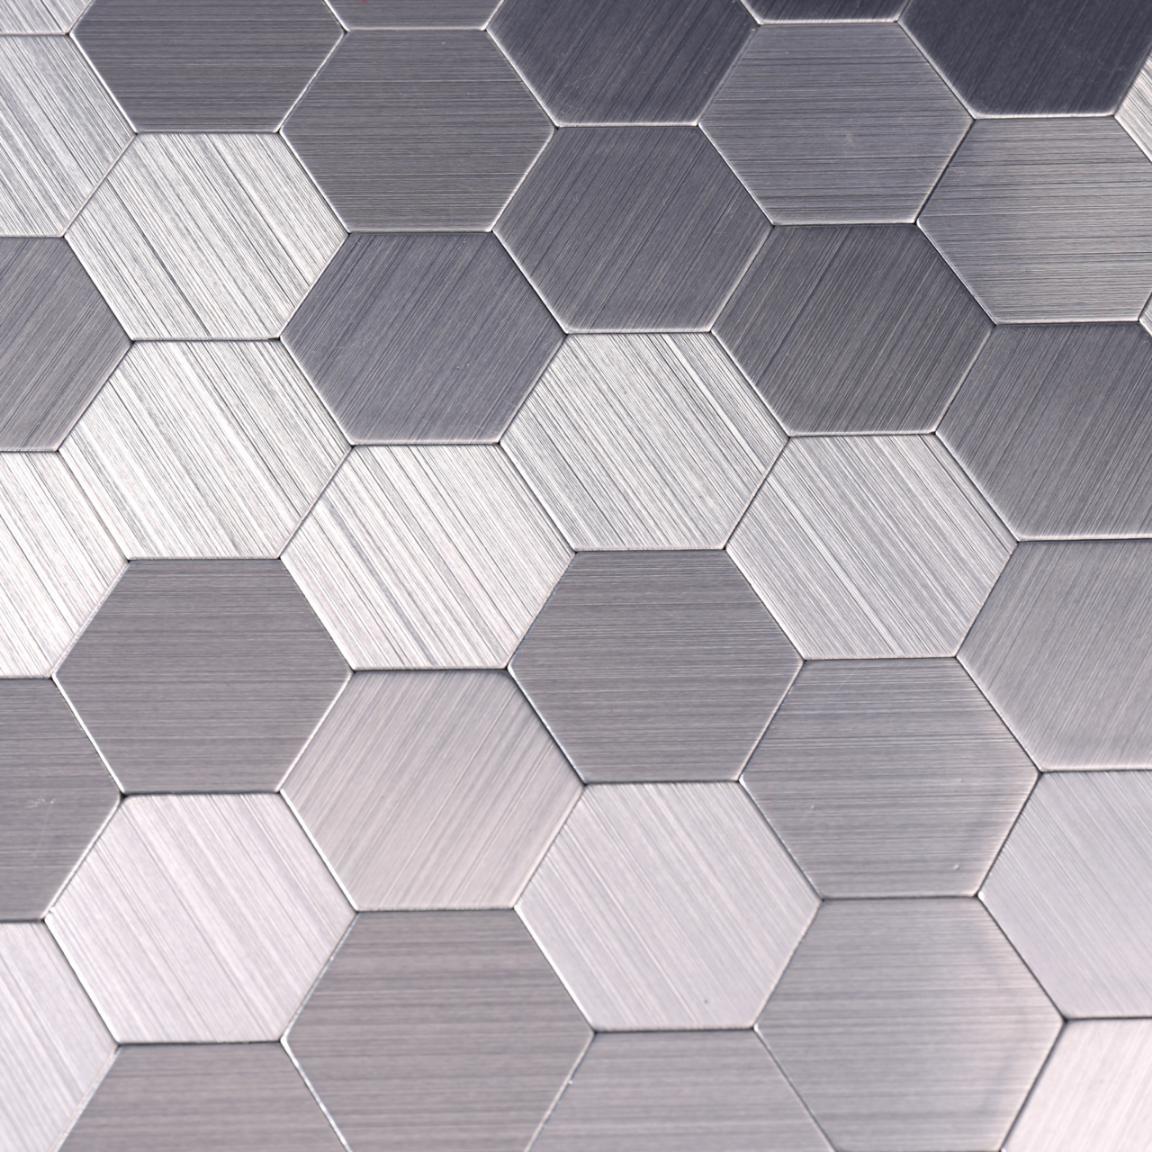 Heng Xing grey metal mosaic tile series for kitchen-3